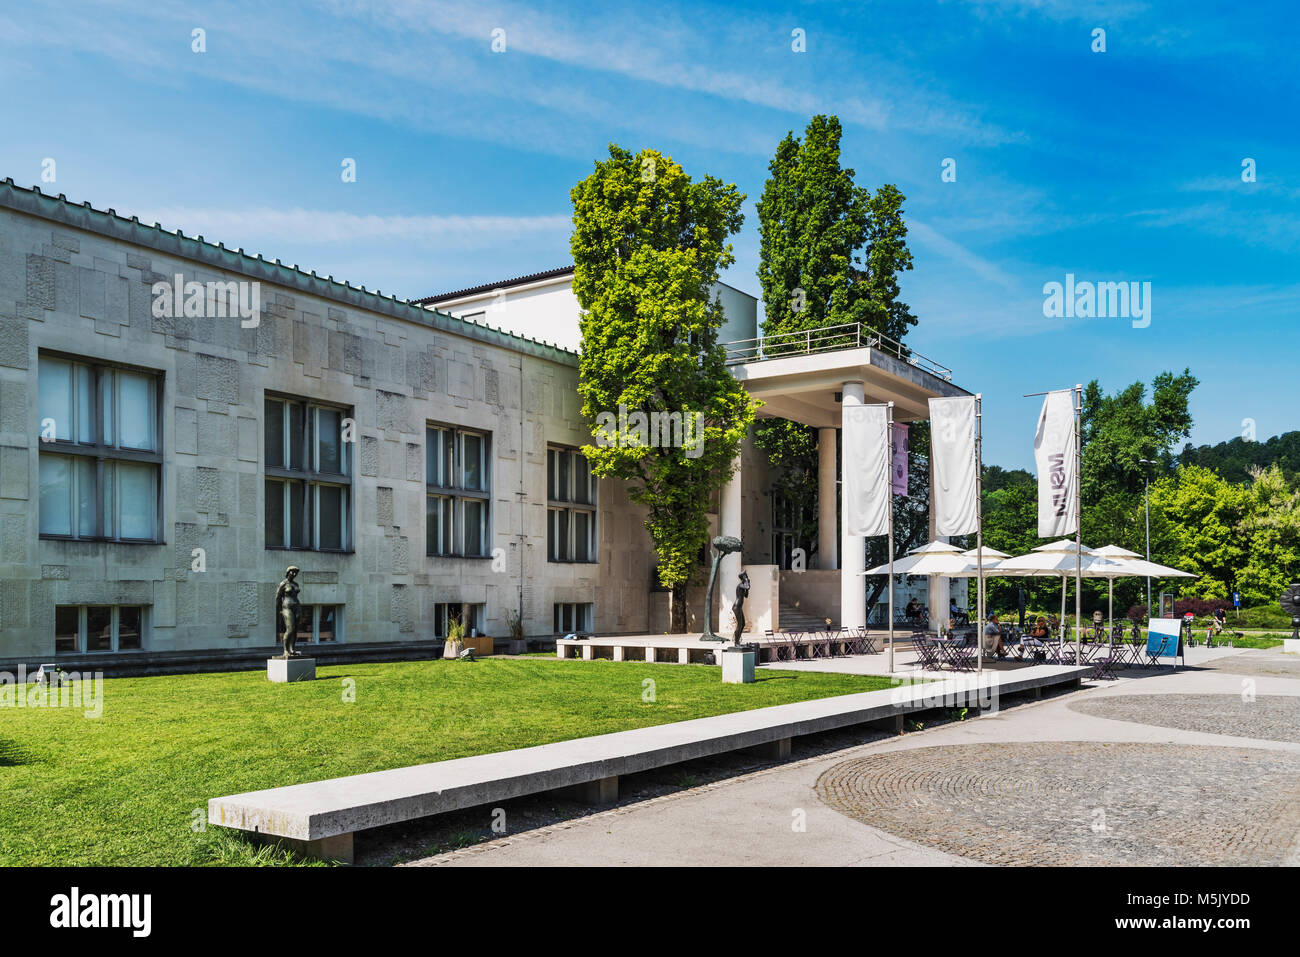 Das Museum für Moderne Kunst (Moderna Galerija) ist in Ljubljana. Das Gebäude wurde 1948 von dem Architekten Edvard Ravnikar, Ljubljana, Slowenien, Eu gebaut Stockfoto